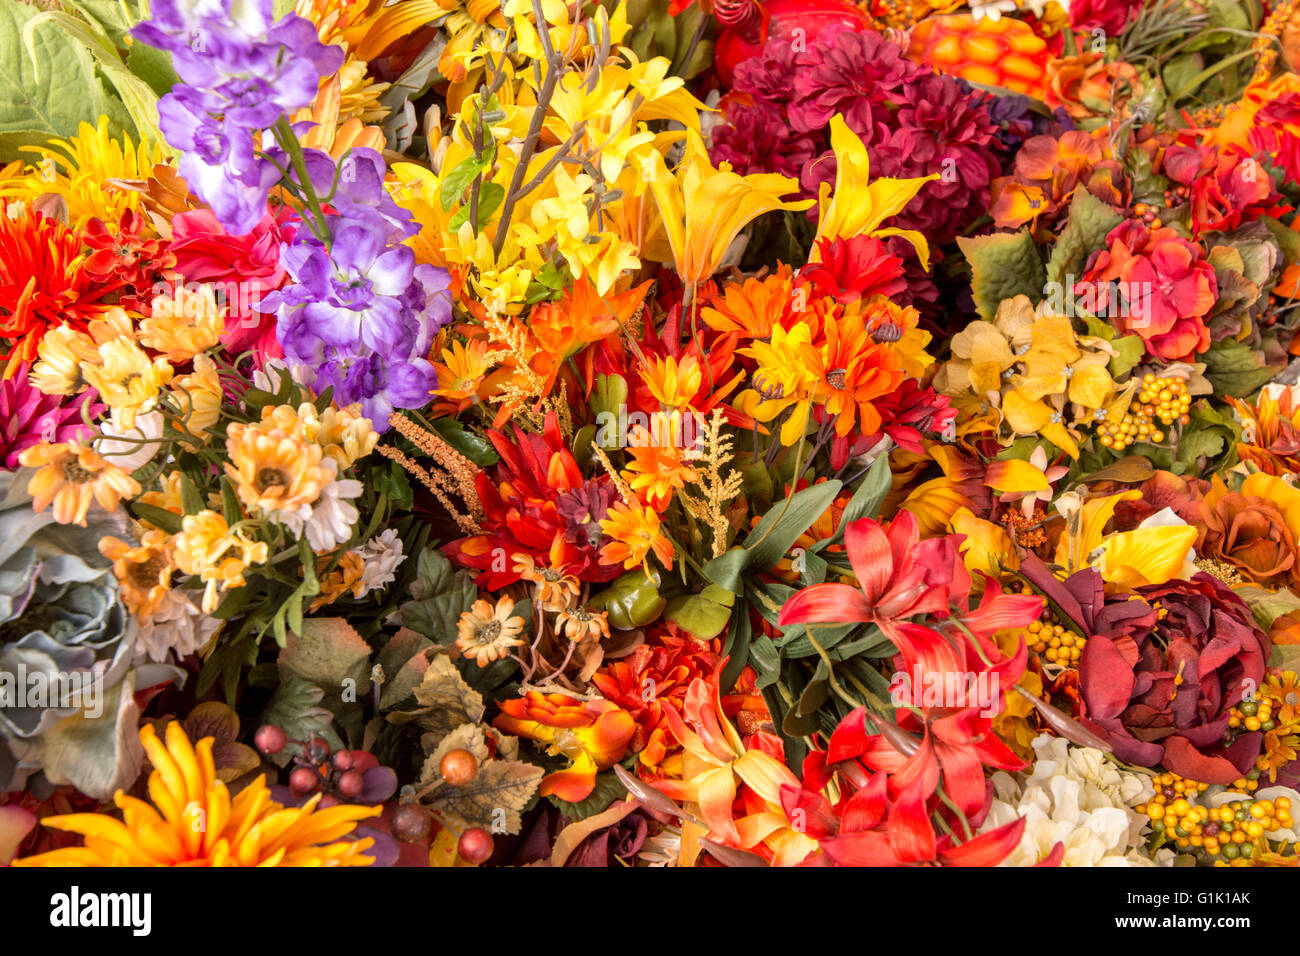 Grande grappe de fleurs aux couleurs éclatantes au cours du marché Banque D'Images